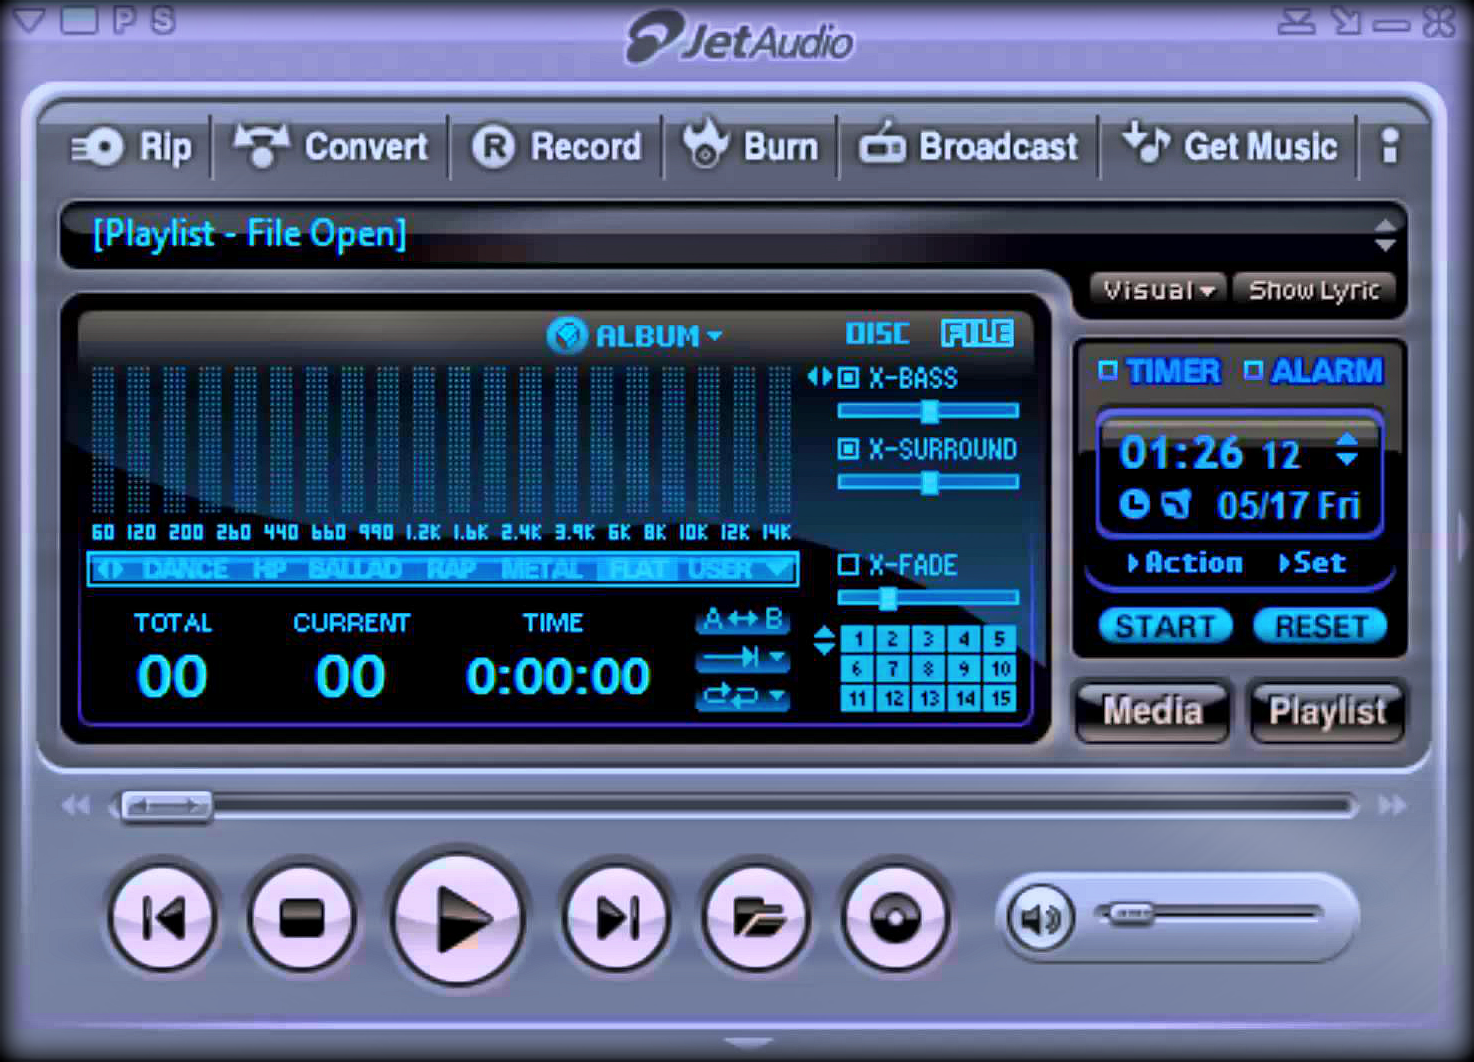 تحميل برنامج جيت أوديو Download Jet Audio لتشغيل الميديا